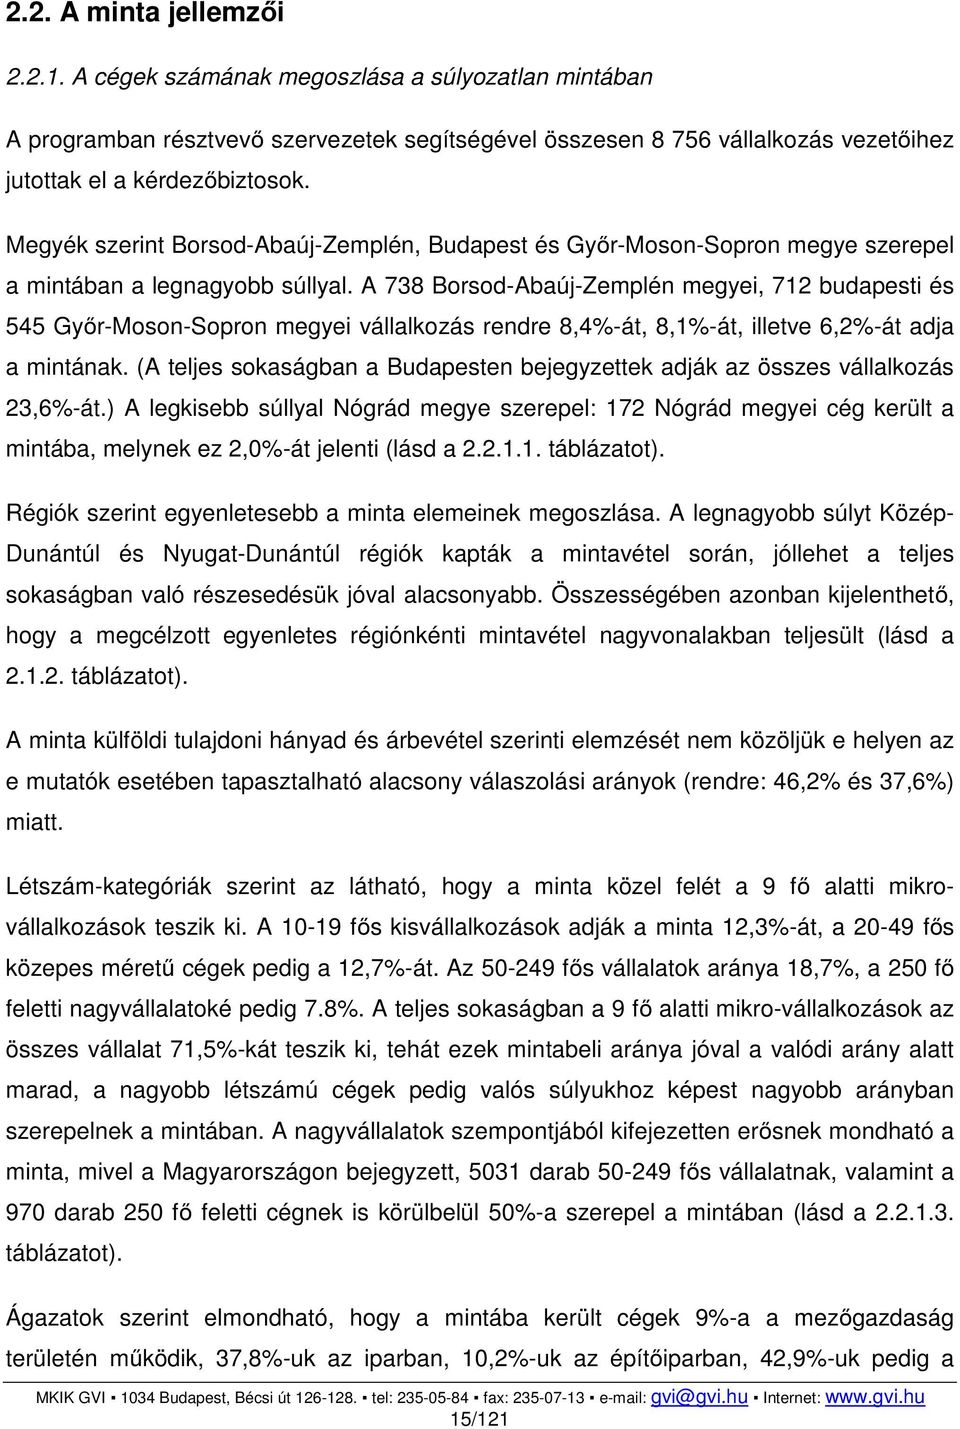 A 738 Borsod-Abaúj-Zemplén megyei, 712 budapesti és 545 Győr-Moson-Sopron megyei vállalkozás rendre 8,4%-át, 8,1%-át, illetve 6,2%-át adja a mintának.